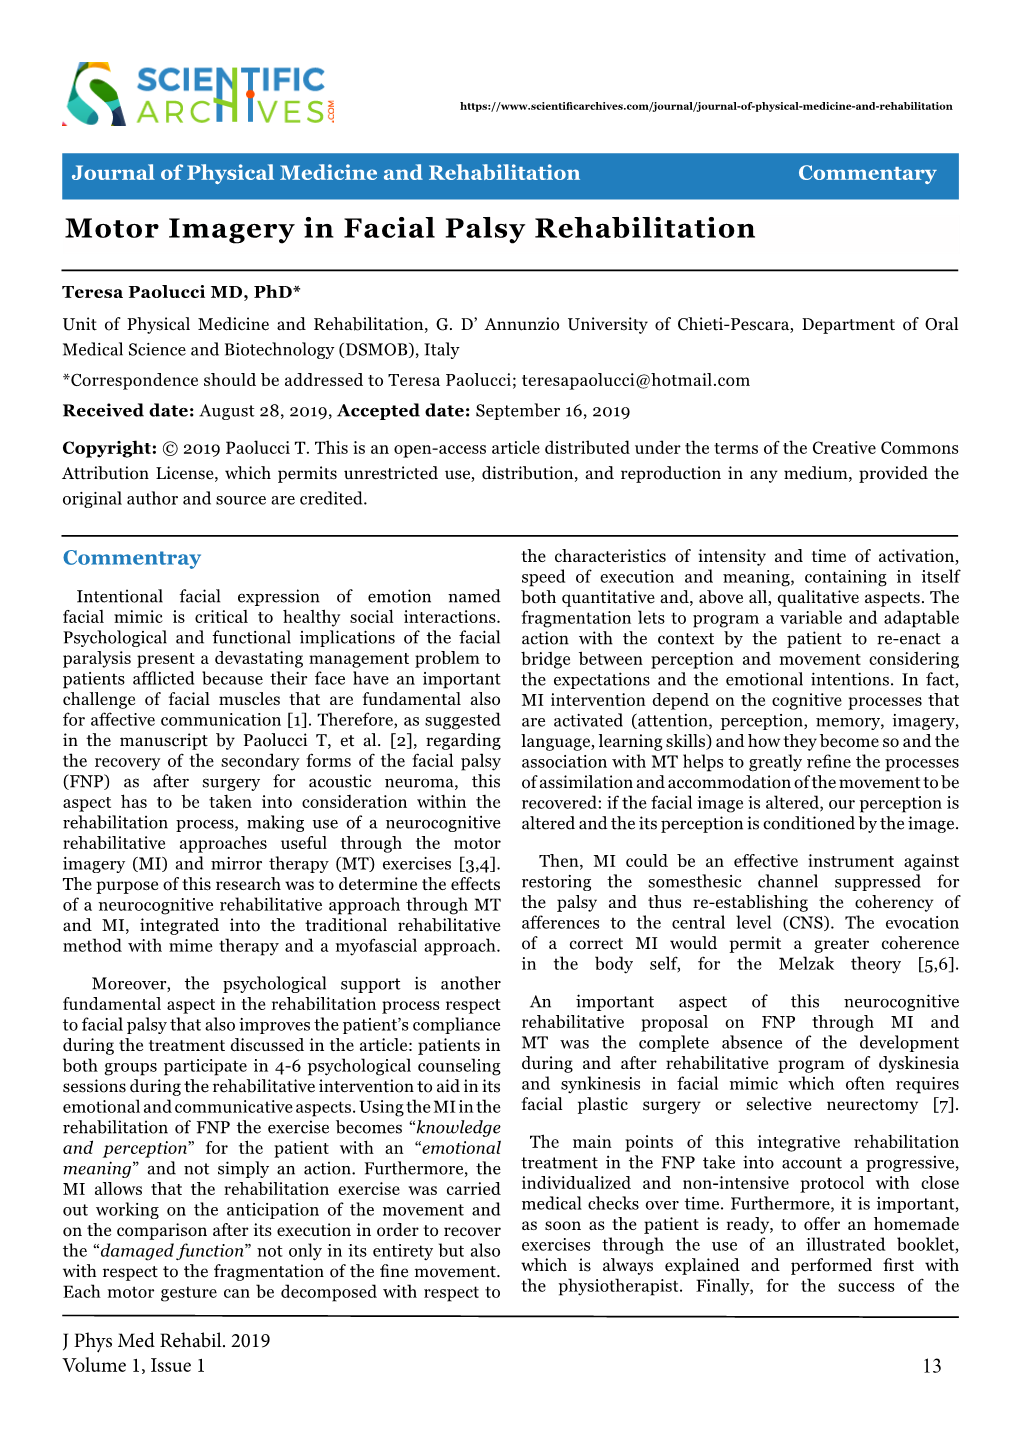 Motor Imagery in Facial Palsy Rehabilitation